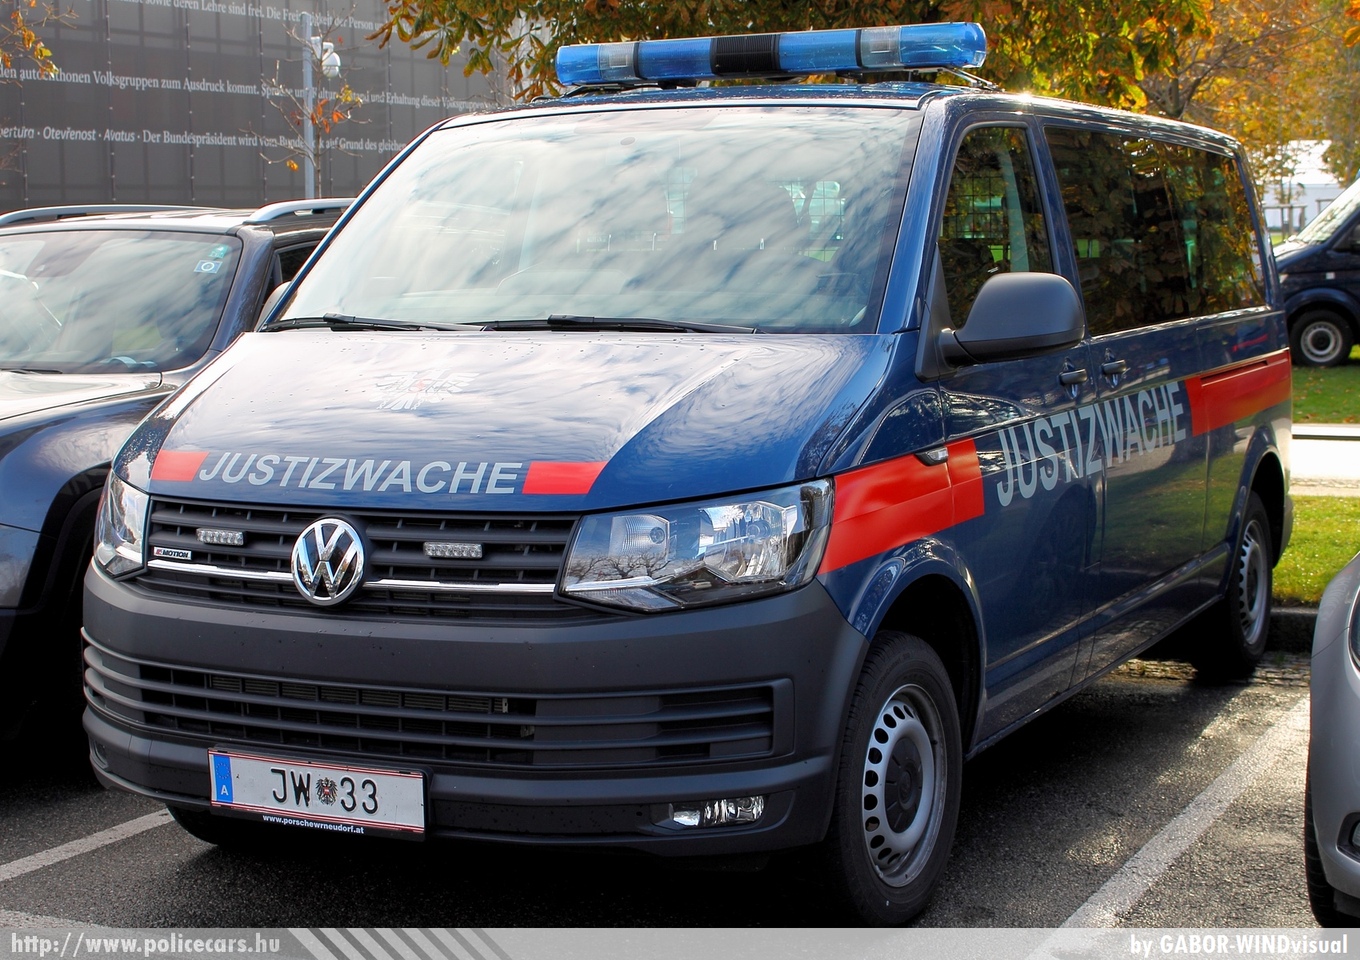 Volkswagen Transporter T6, fotó: GABOR- WINDvisual
Keywords: osztrák Ausztria Austria austrian bv prison